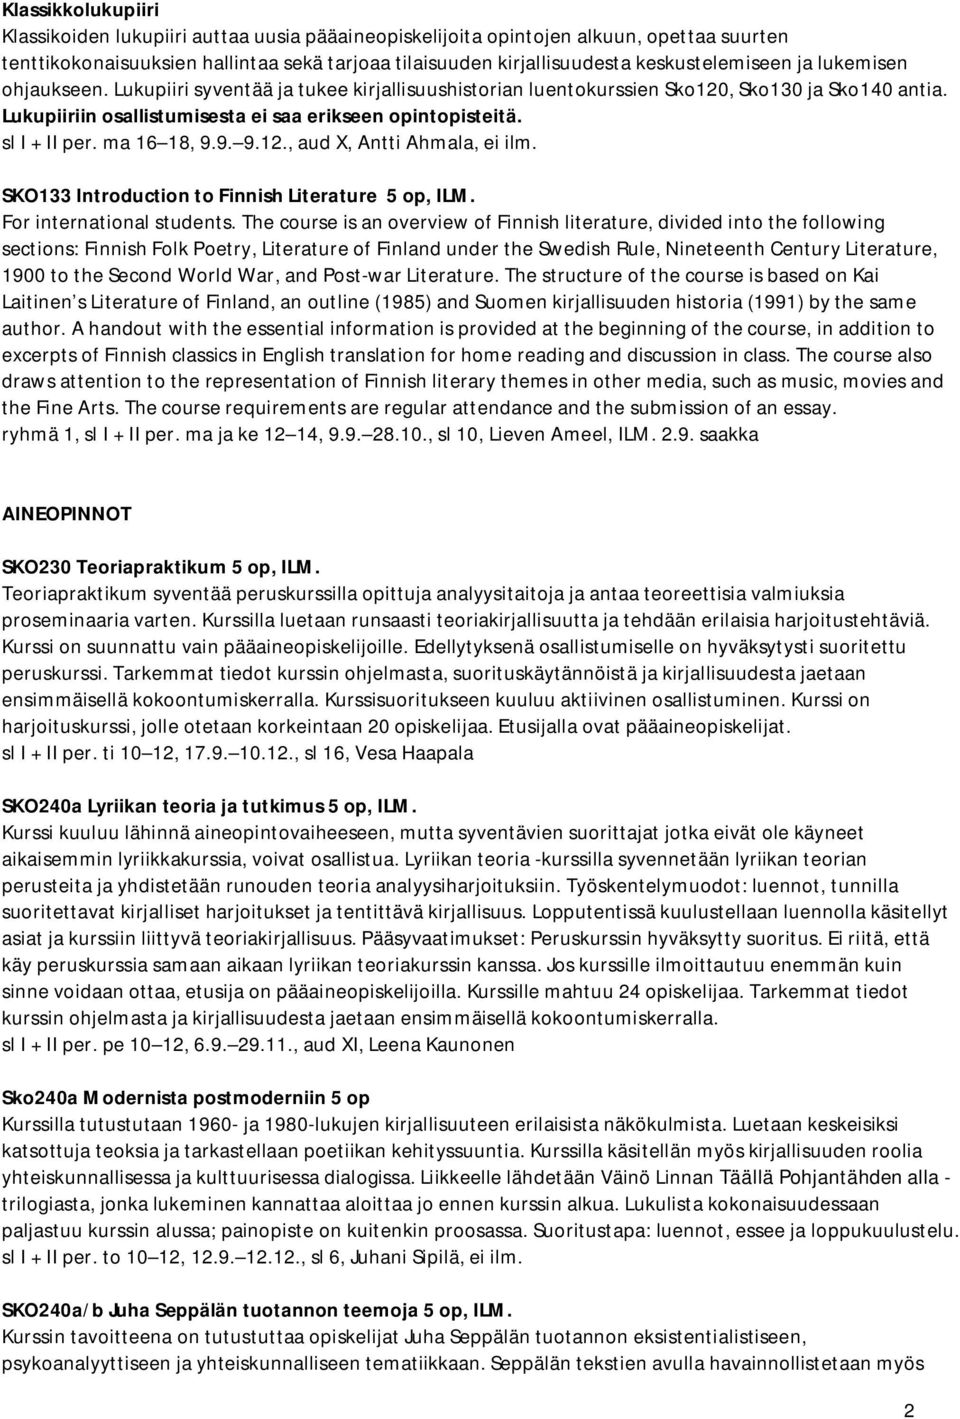 sl I + II per. ma 16 18, 9.9. 9.12., aud X, Antti Ahmala, ei ilm. SKO133 Introduction to Finnish Literature 5 op, ILM. For international students.